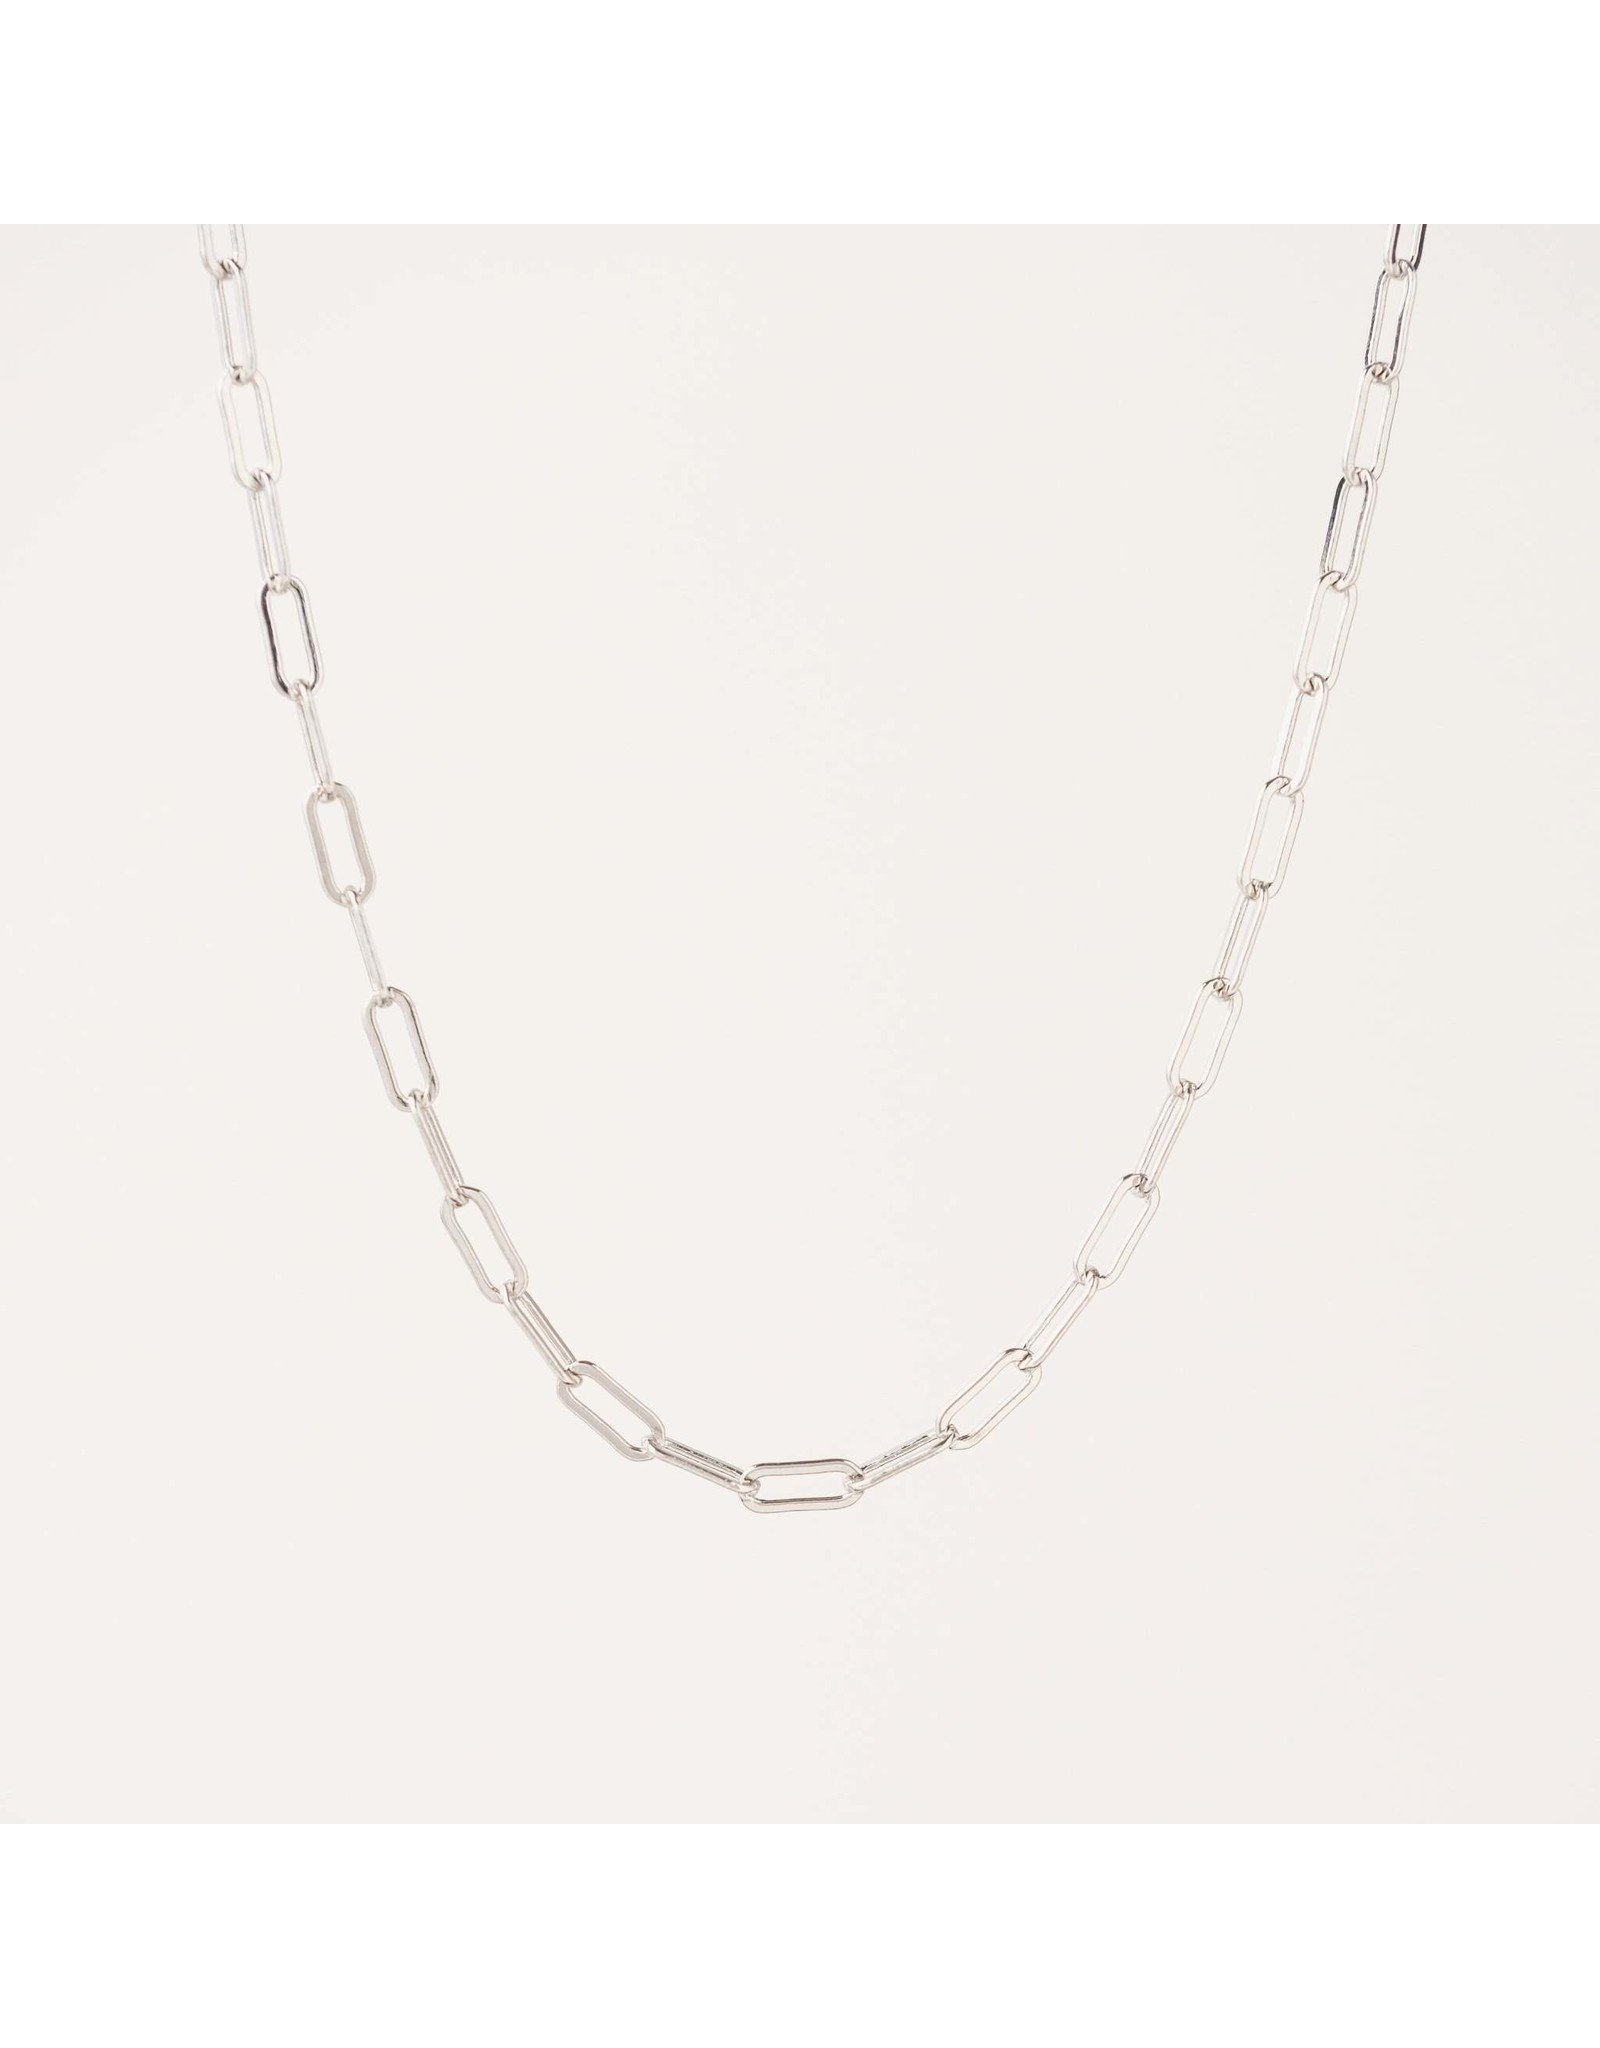 Boyfriend Chain Necklace